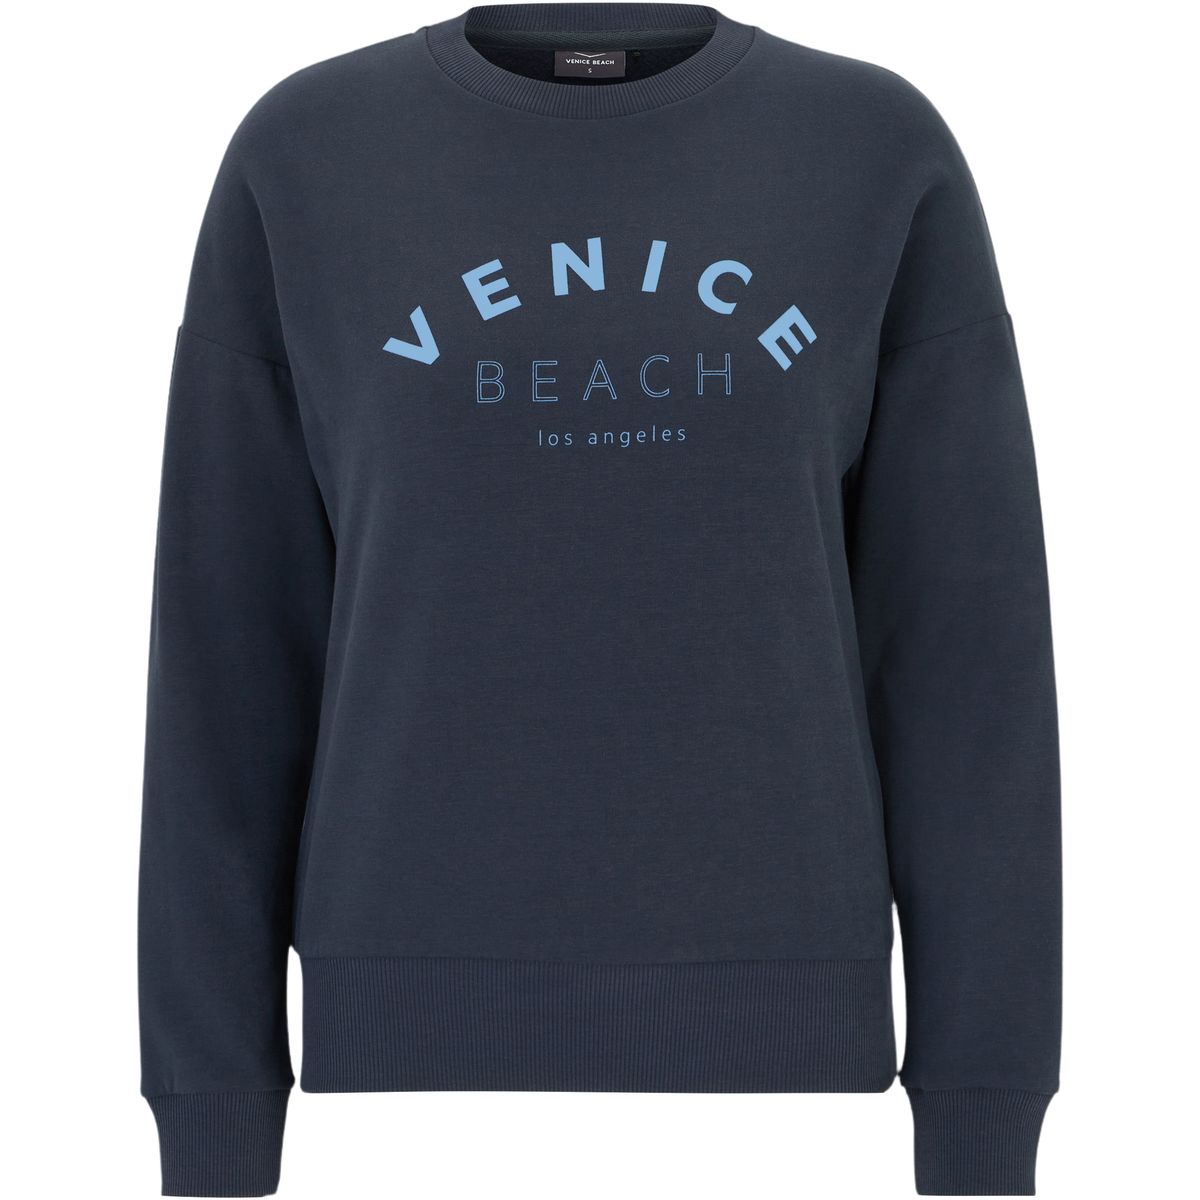 Venice Beach Lissa Damen Sweatshirt